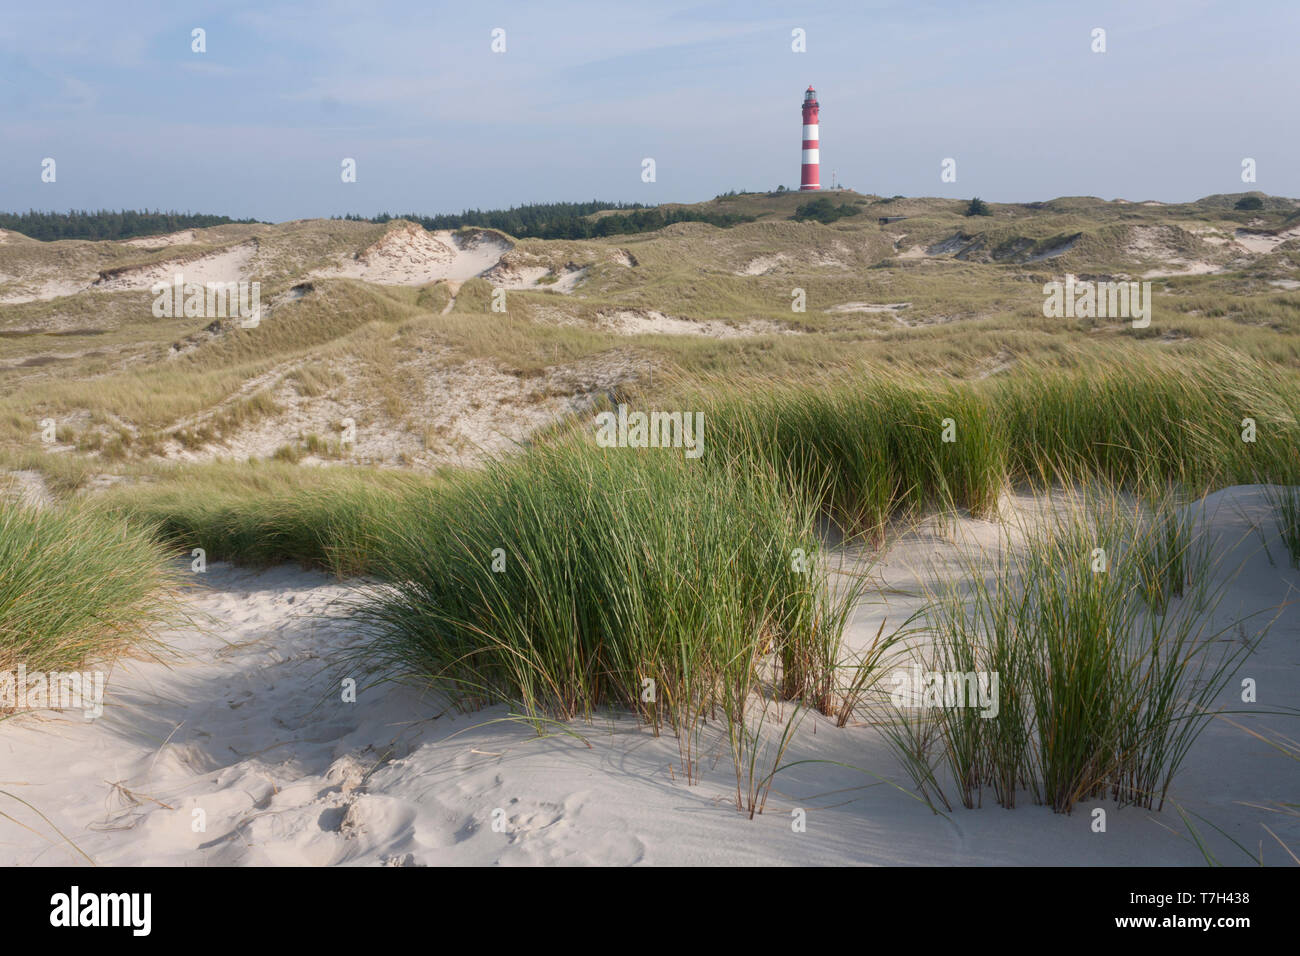 Dunes sur la côte de la mer du Nord sur l'île de Wadden Amrum, Allemagne. Banque D'Images